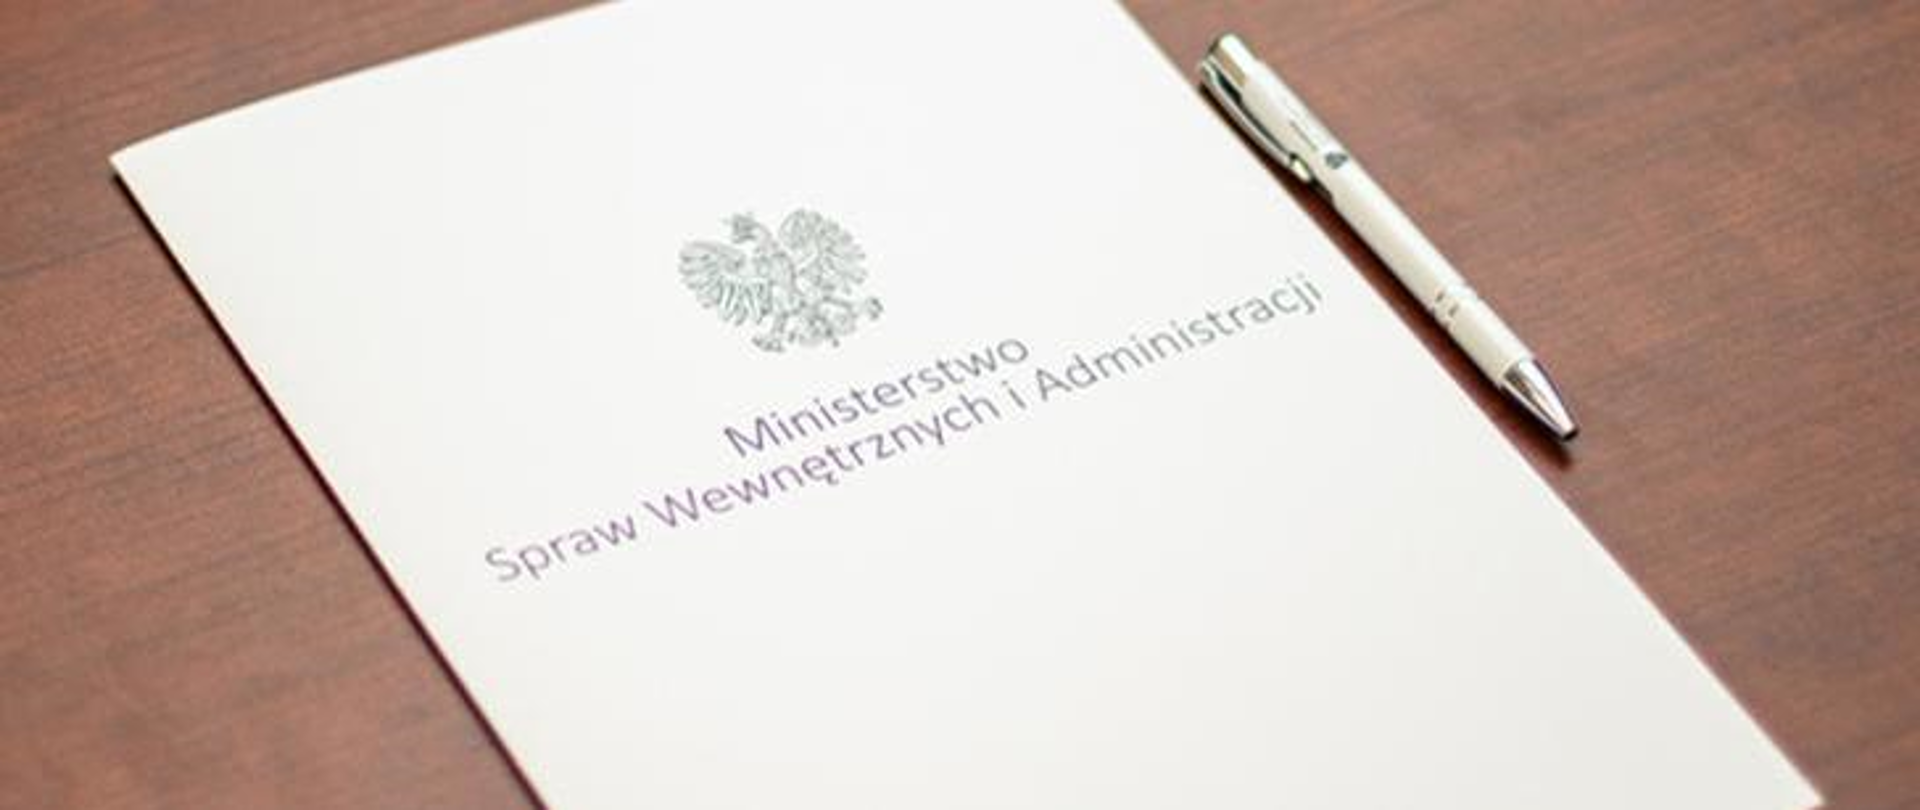 Zdjęcie przedstawia teczkę na dokumenty z napisem Ministerstwo Spraw Wewnętrznych i Administracji